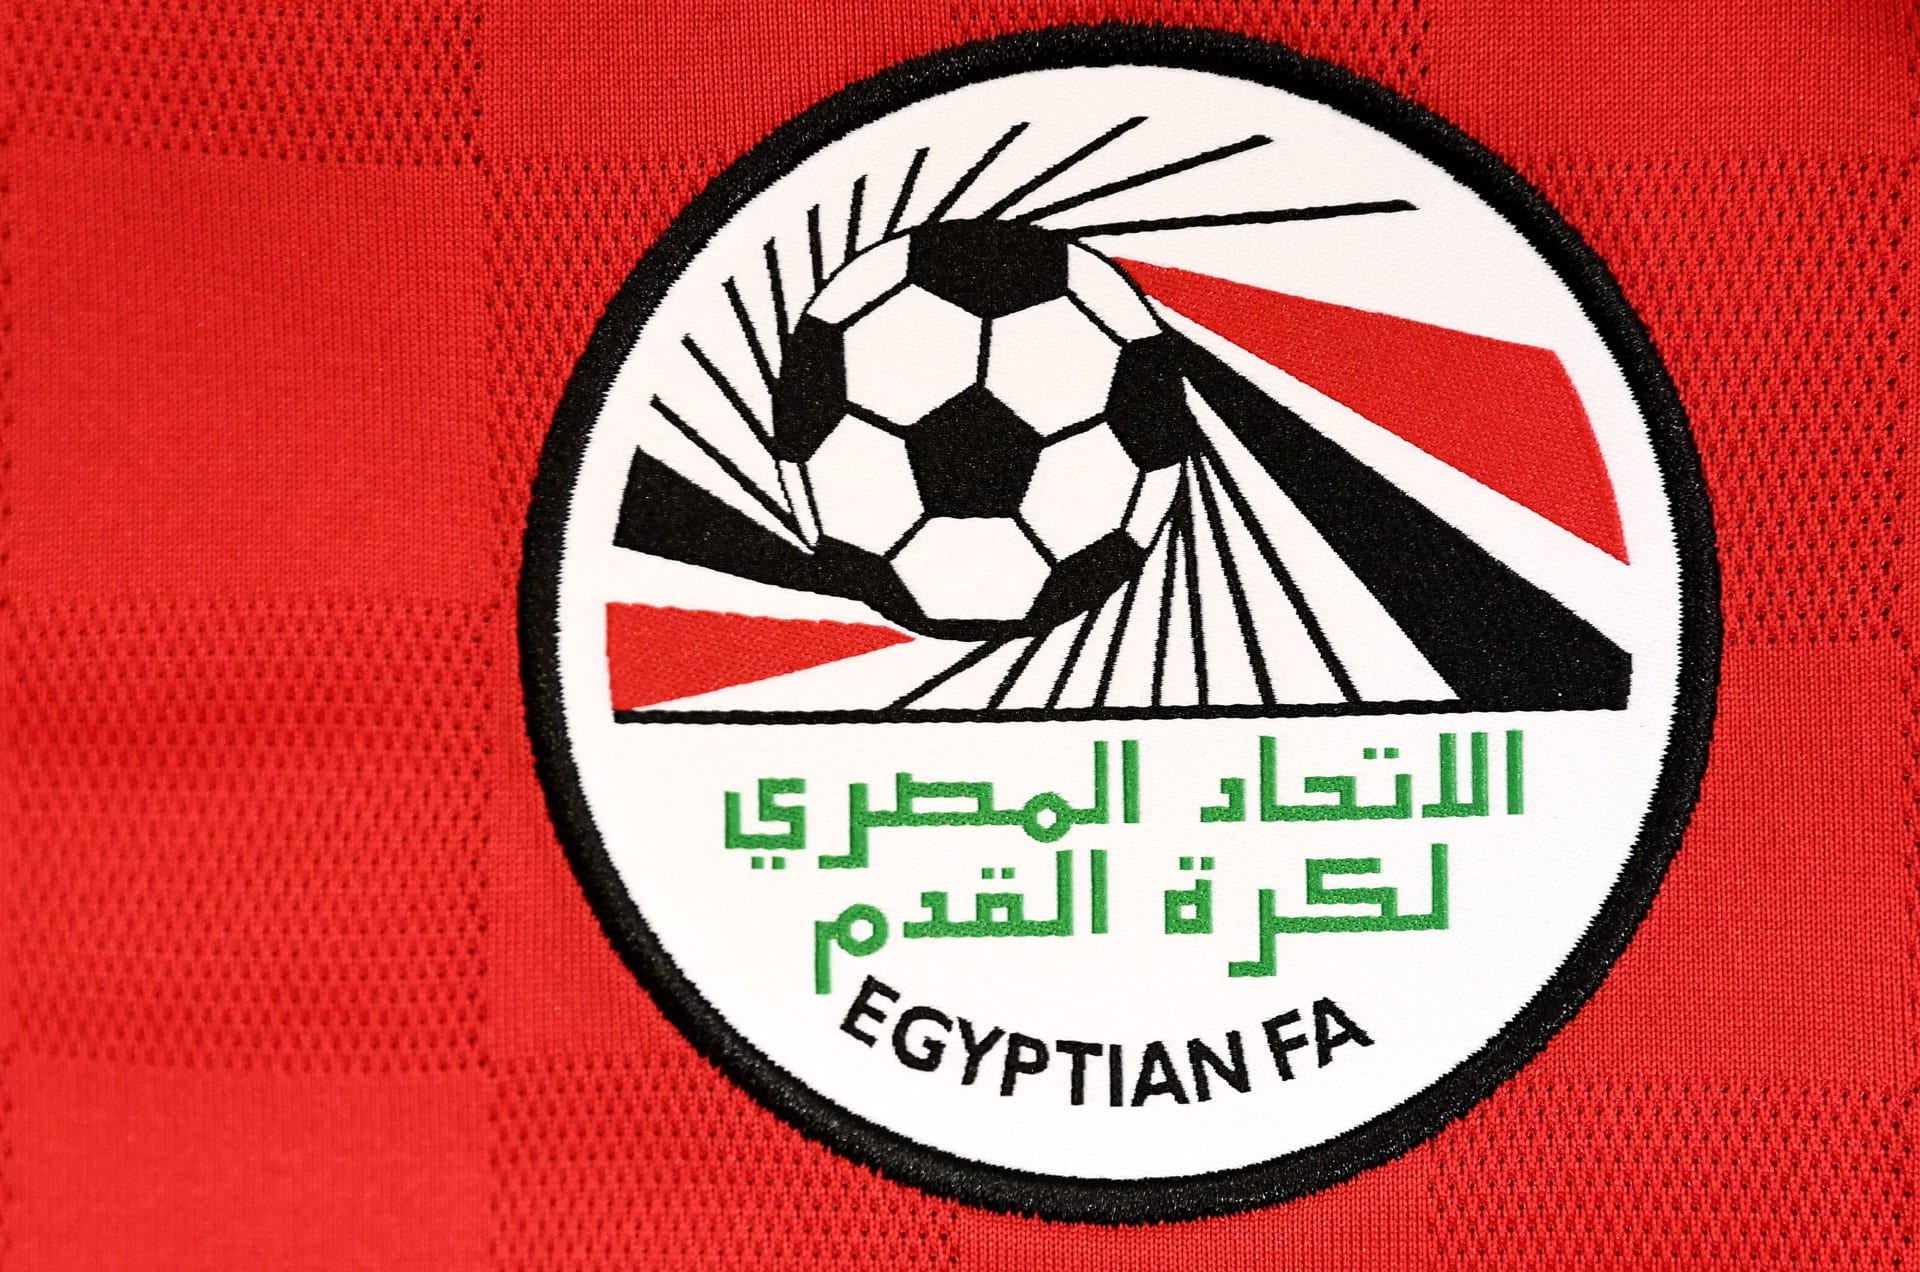 كيف رد اتحاد الكرة المصري على "نصيحة" فيفبرو بعدم التعاقد مع الأندية المصرية؟